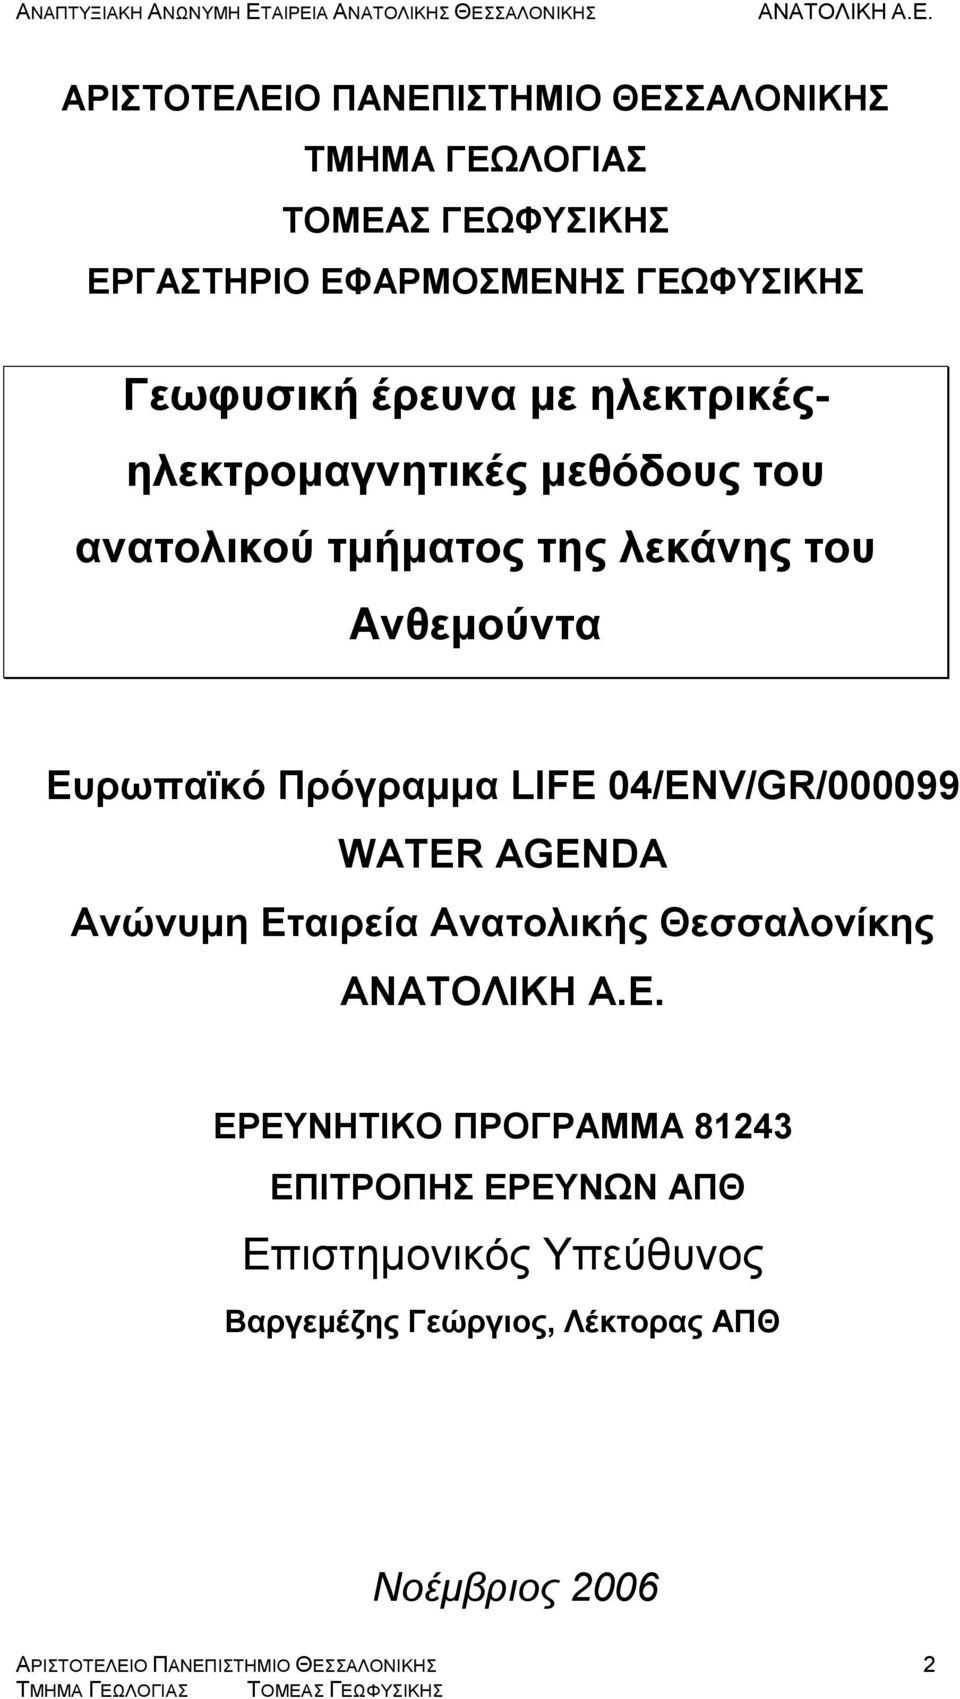 Ευρωπαϊκό Πρόγραμμα LIFE 04/ENV/GR/000099 WATER AGENDA Ανώνυμη Εταιρεία Ανατολικής Θεσσαλονίκης ΕΡΕΥΝΗΤΙΚΟ ΠΡΟΓΡΑΜΜΑ